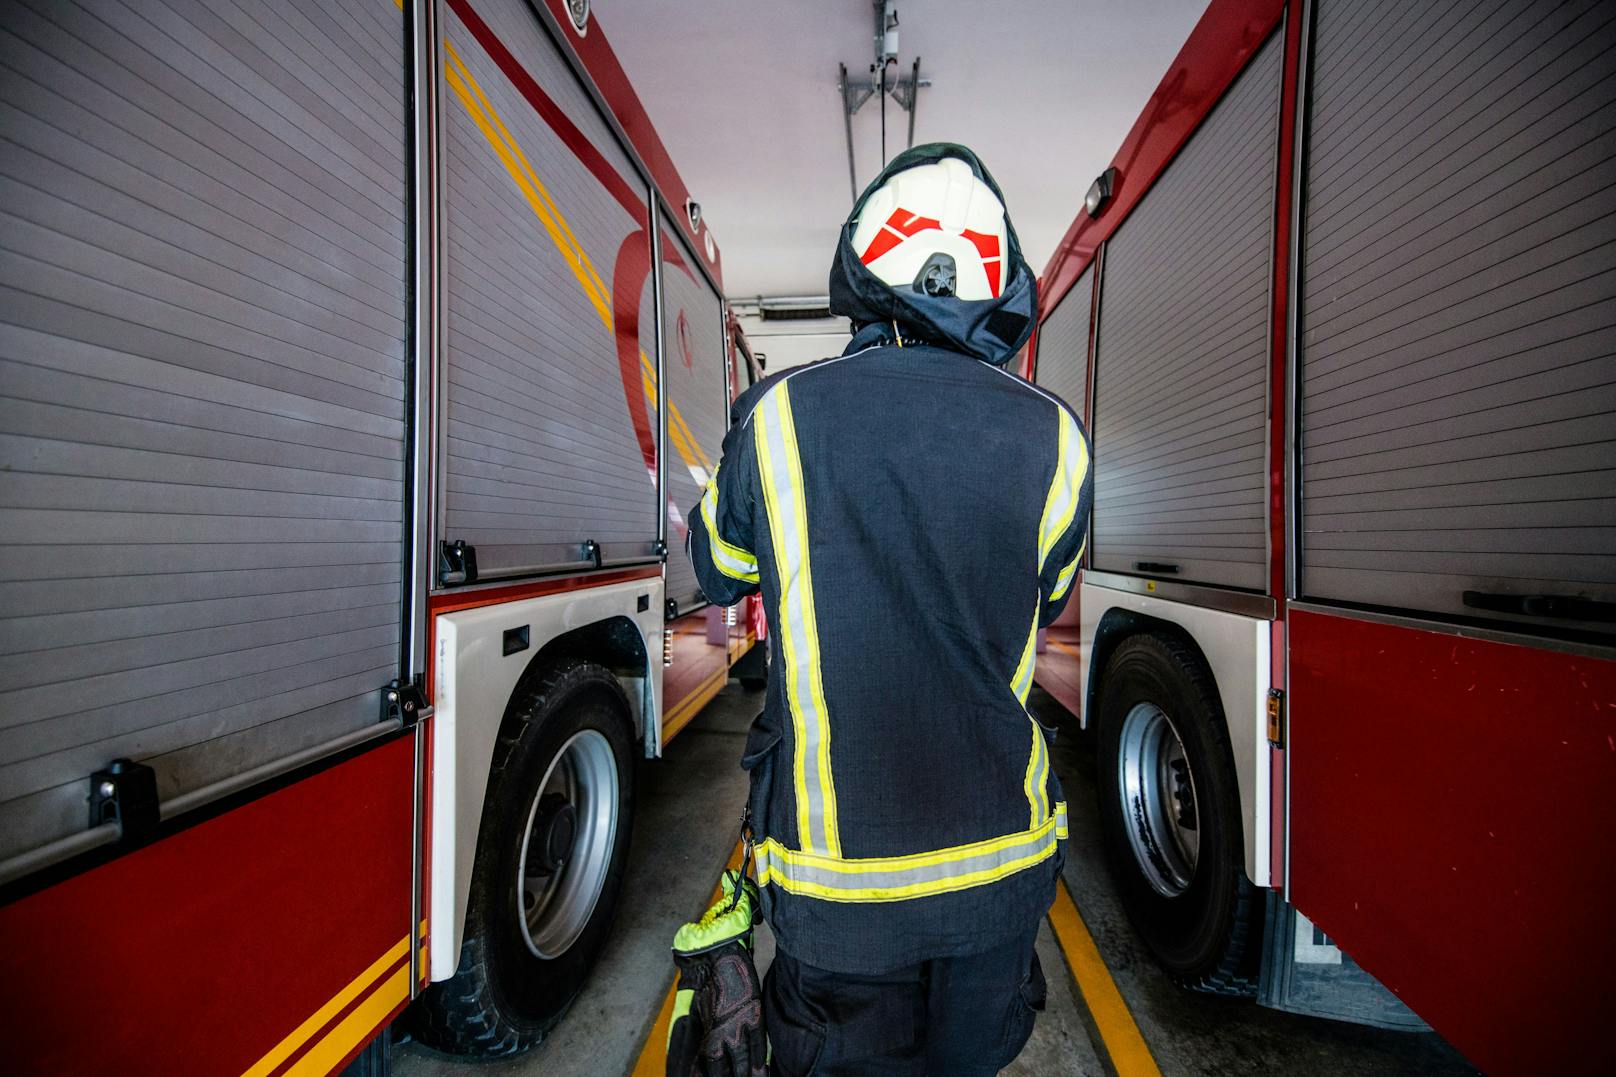 Während eines Einsatzes wurde das Rad eines Feuerwehrmannes gestohlen.